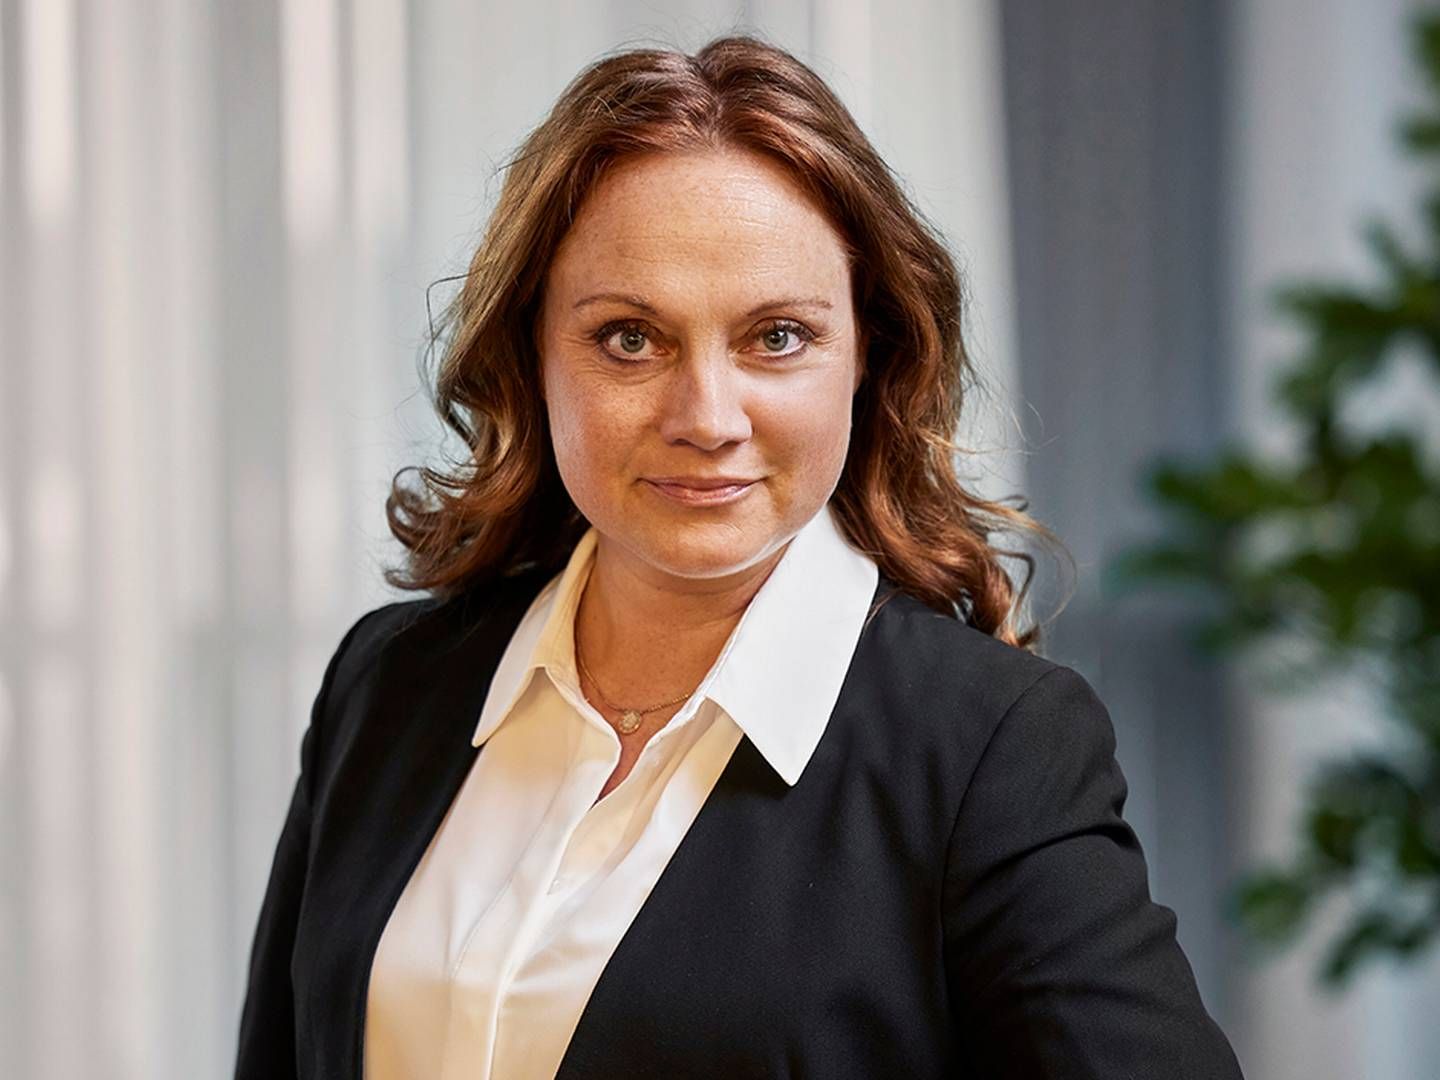 GÅR AV: Susanne Holmström går av etter fem år som Managing Director. | Foto: Pressebilde NetOnNet